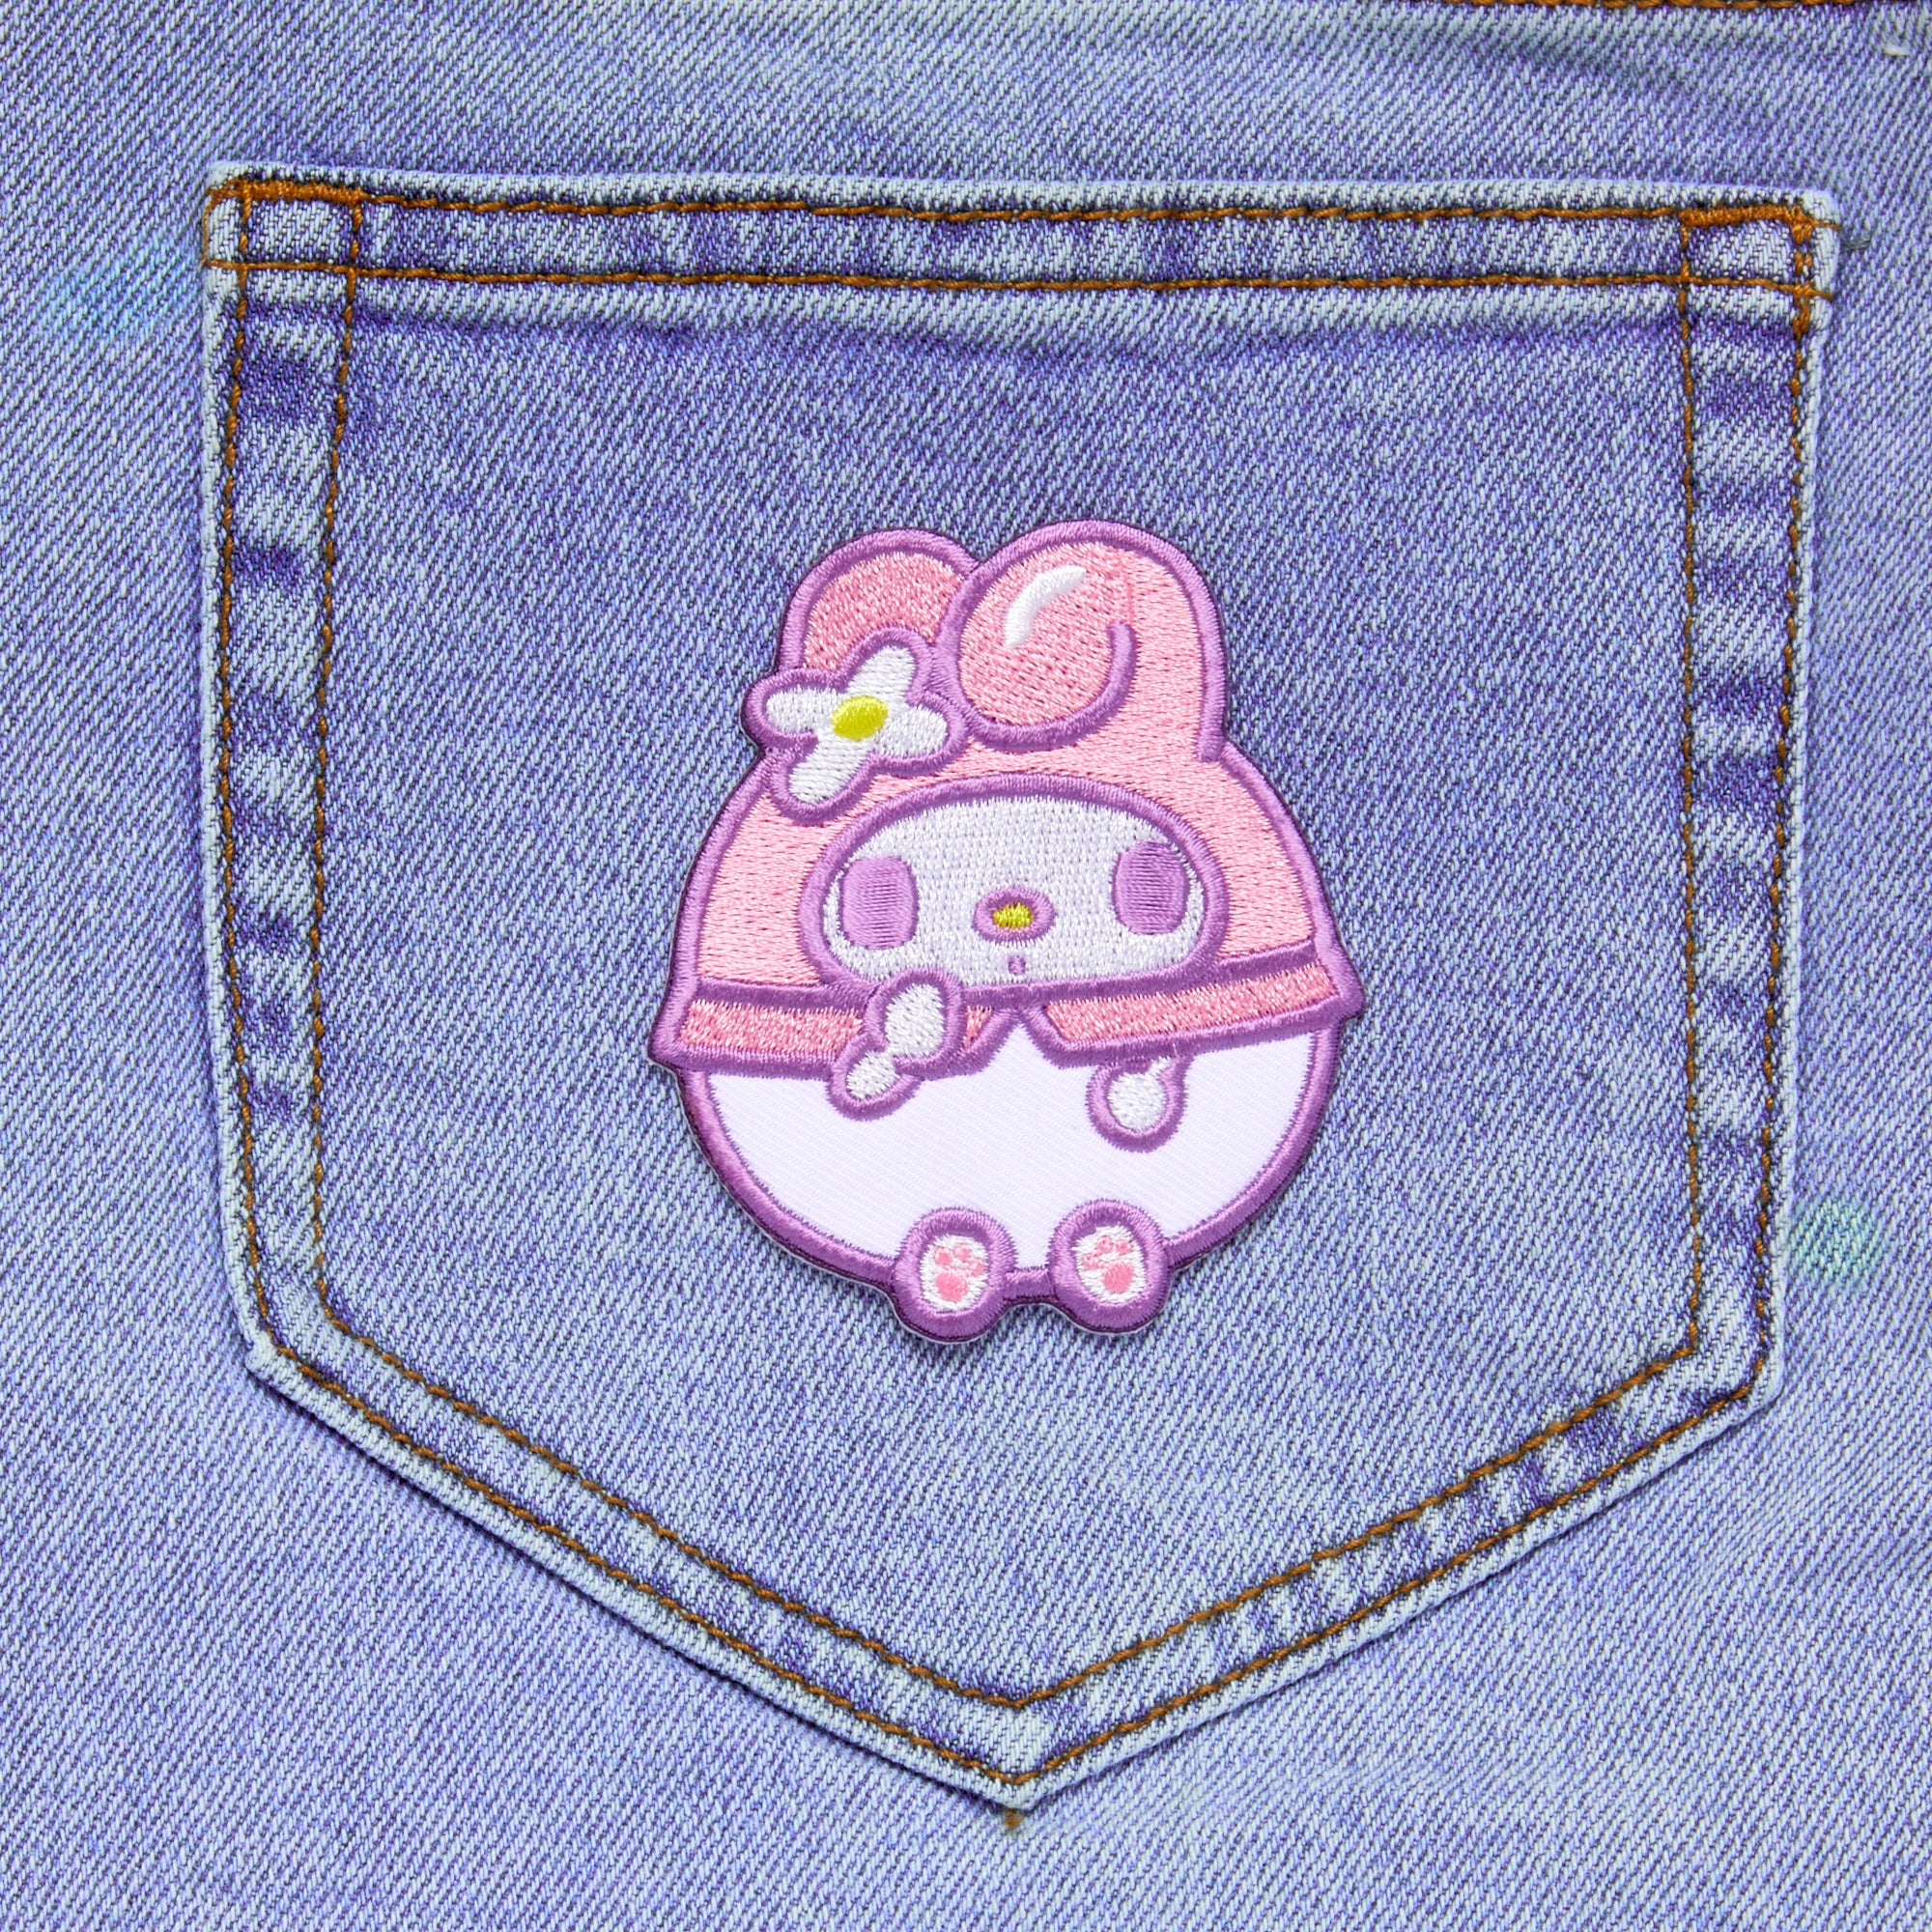 ONE Hello Sanrio Hello Kitty House iron on patch.